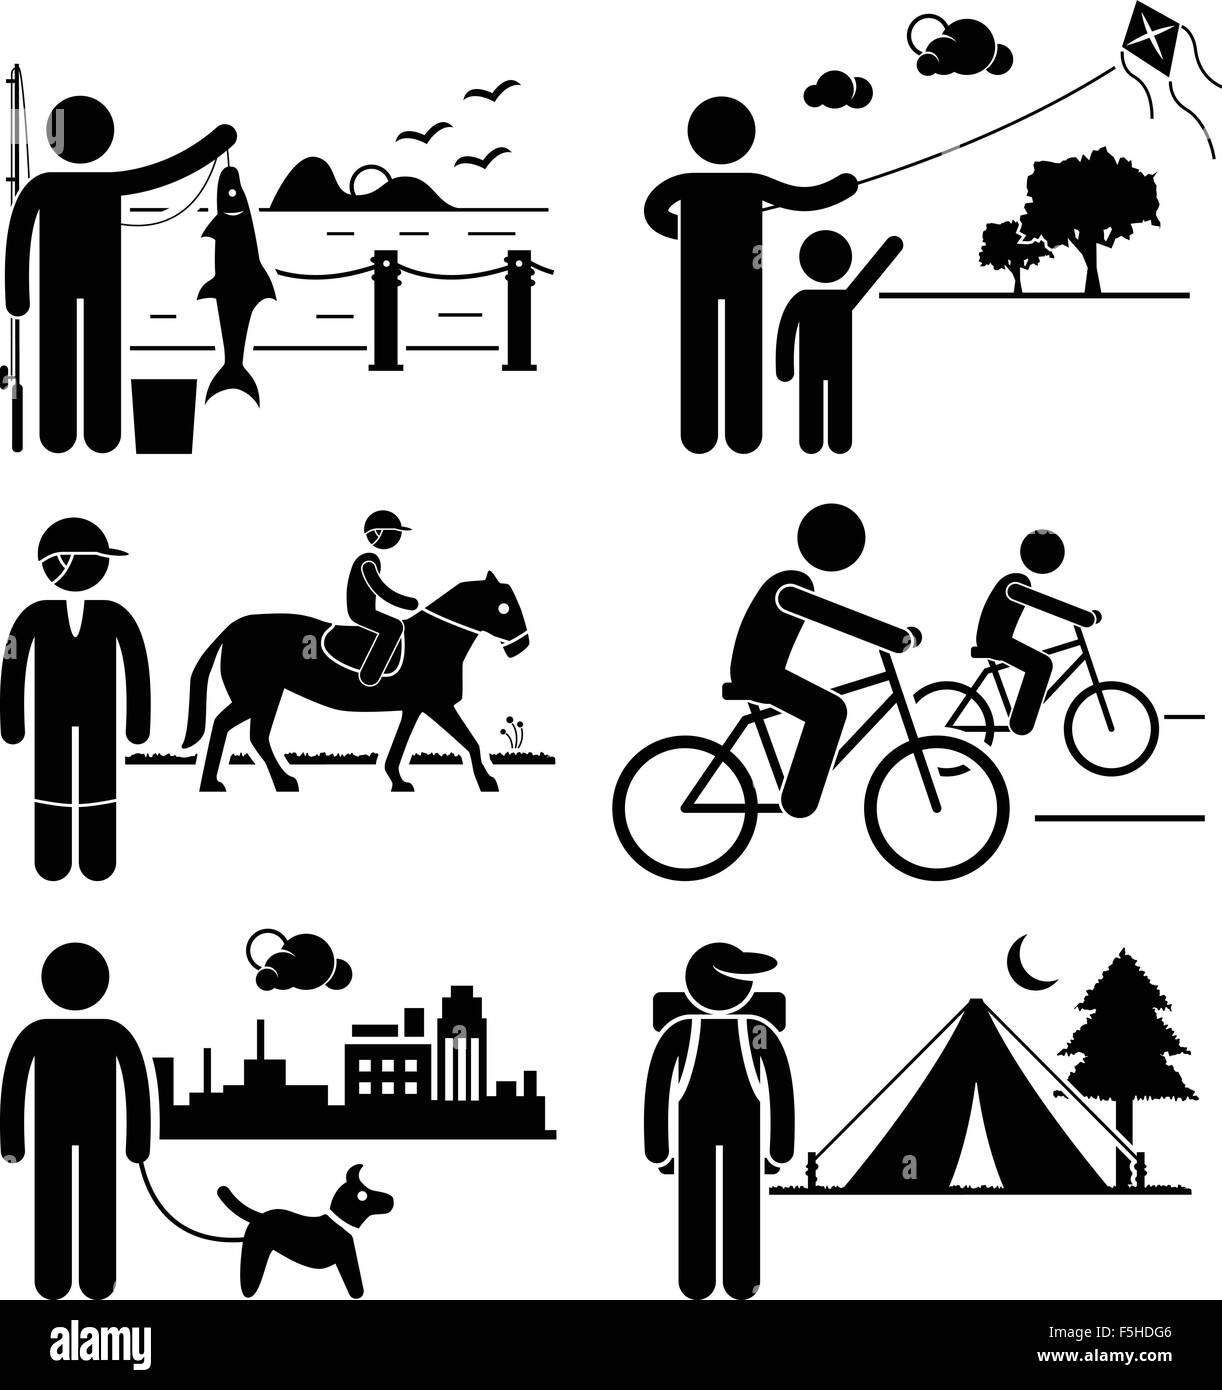 Activités de loisirs de plein air loisirs - pêche, cerf-volant, équitation, randonnée à vélo, promenade de chiens, Camping - Stick Figure les pictogrammes Illustration de Vecteur